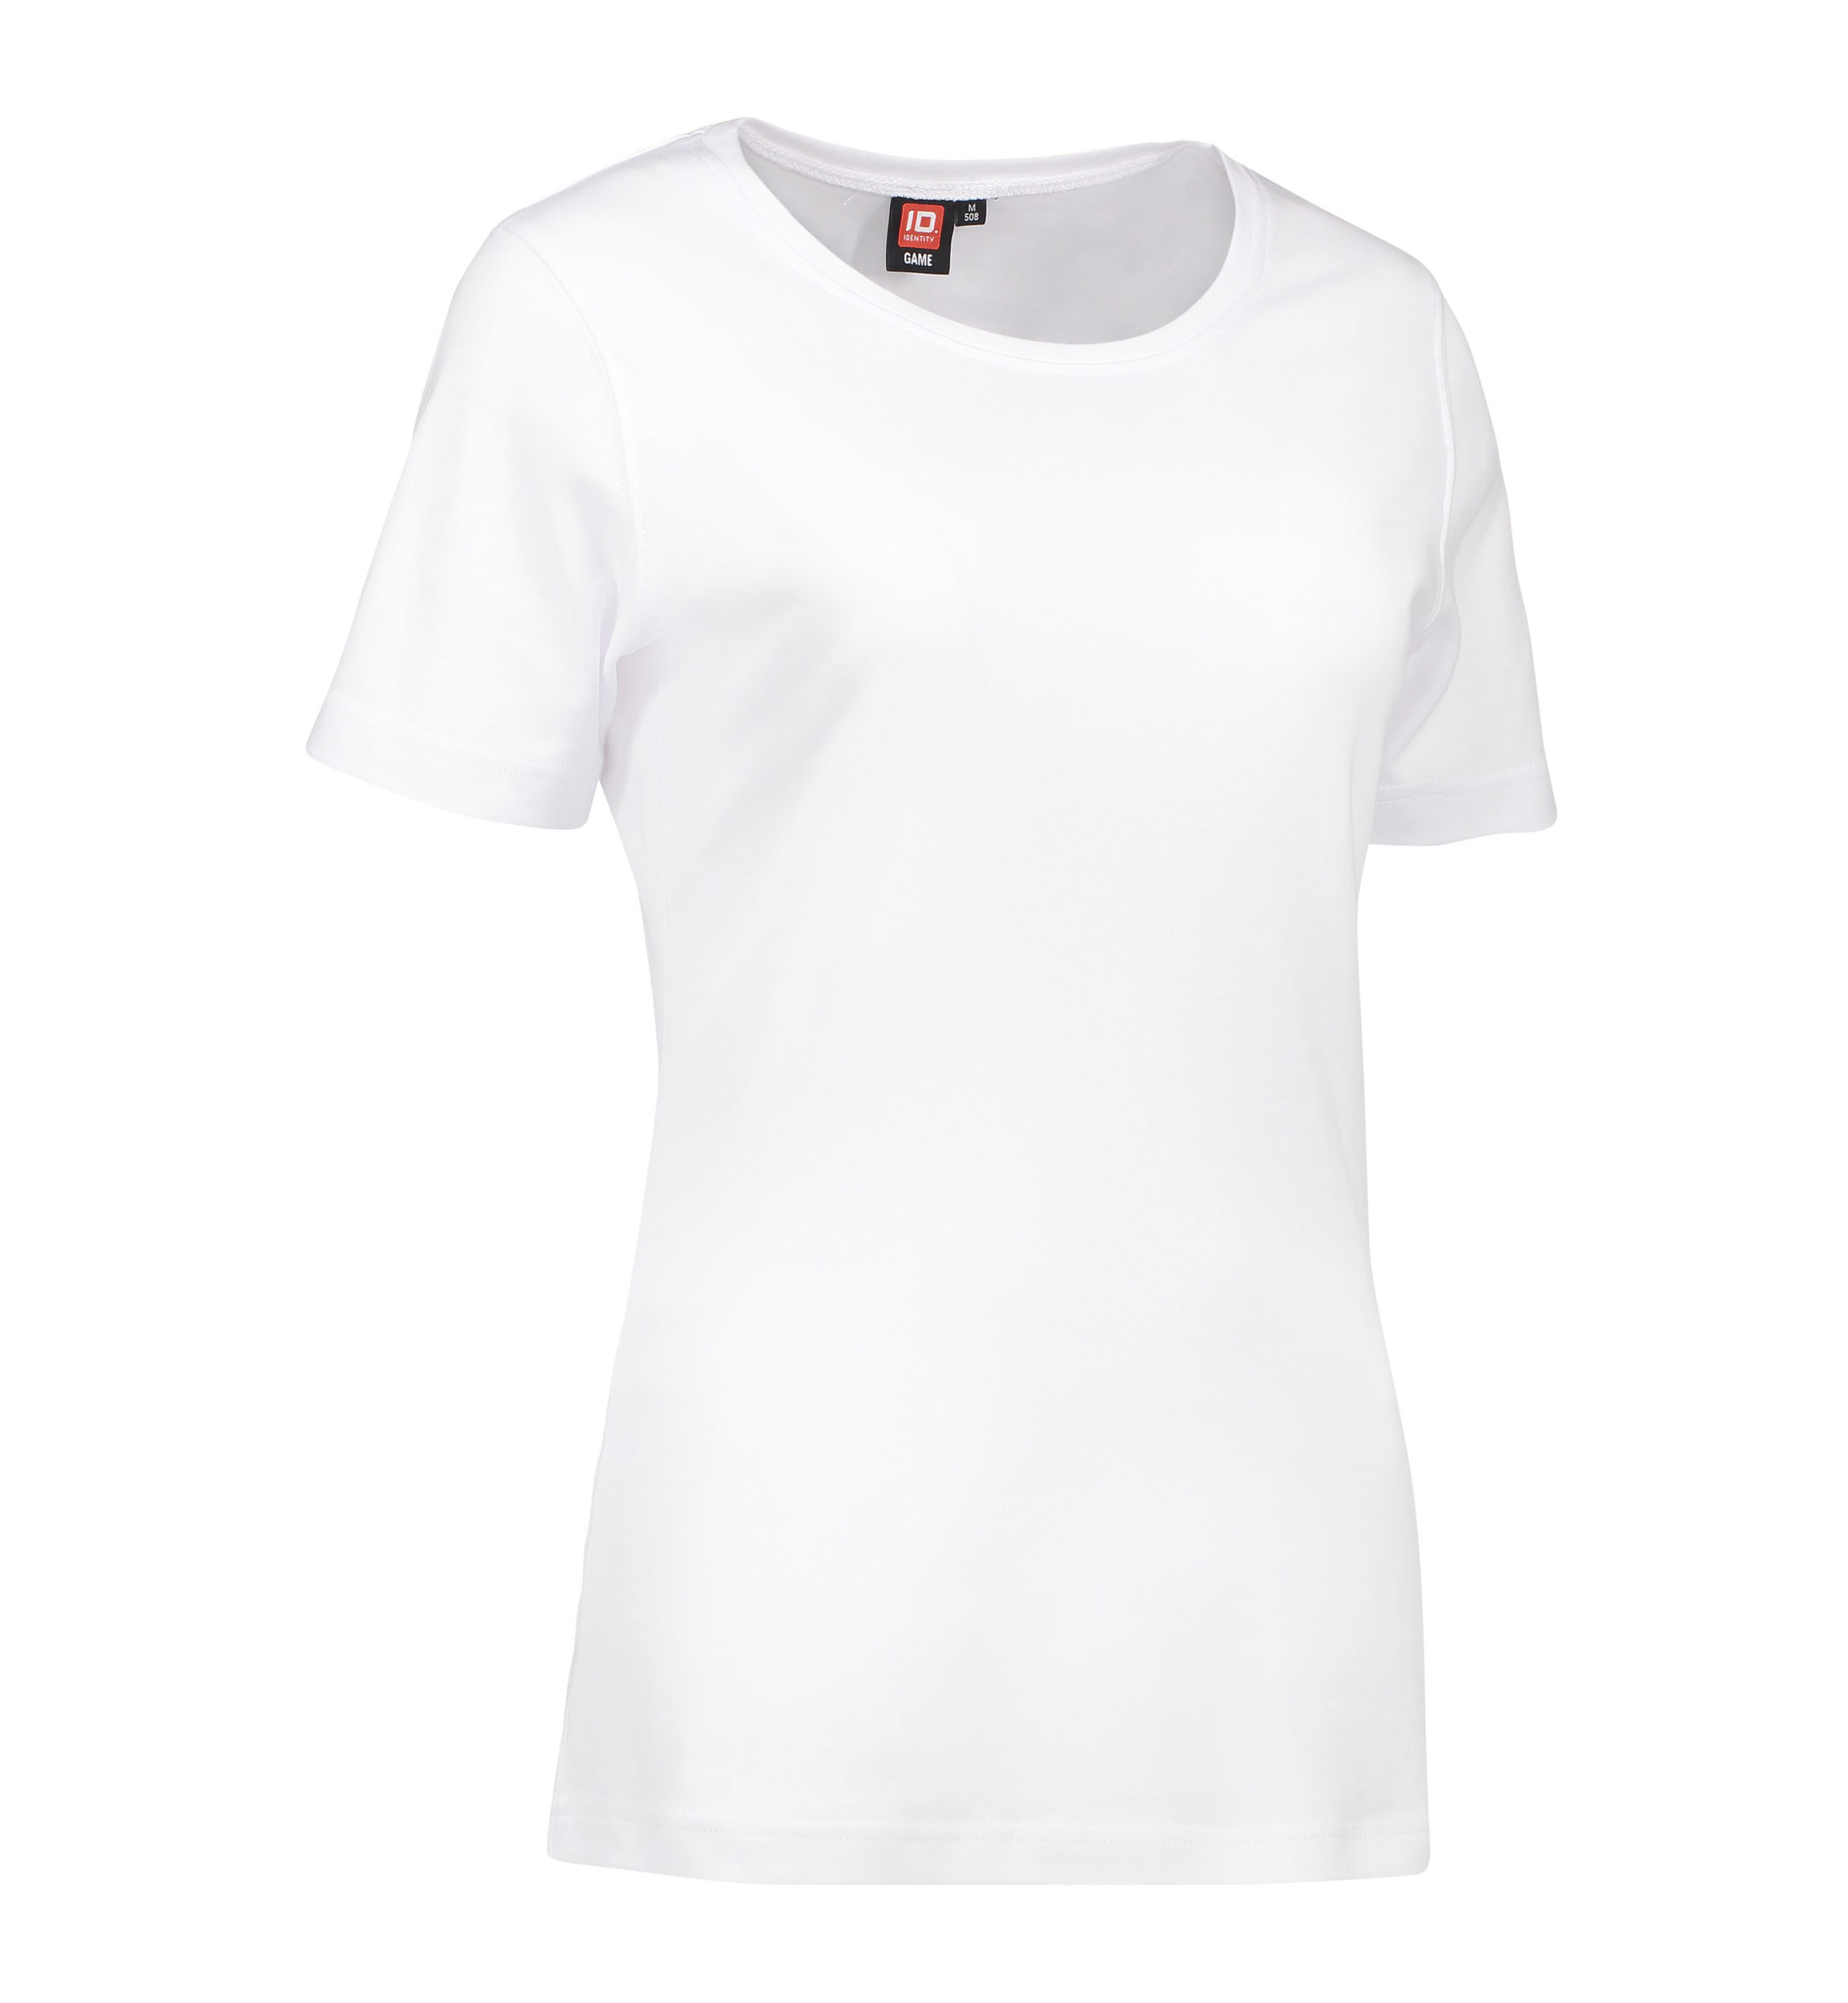 Billede af Dame t-shirt med rund hals i hvid - XL hos Sygeplejebutikken.dk